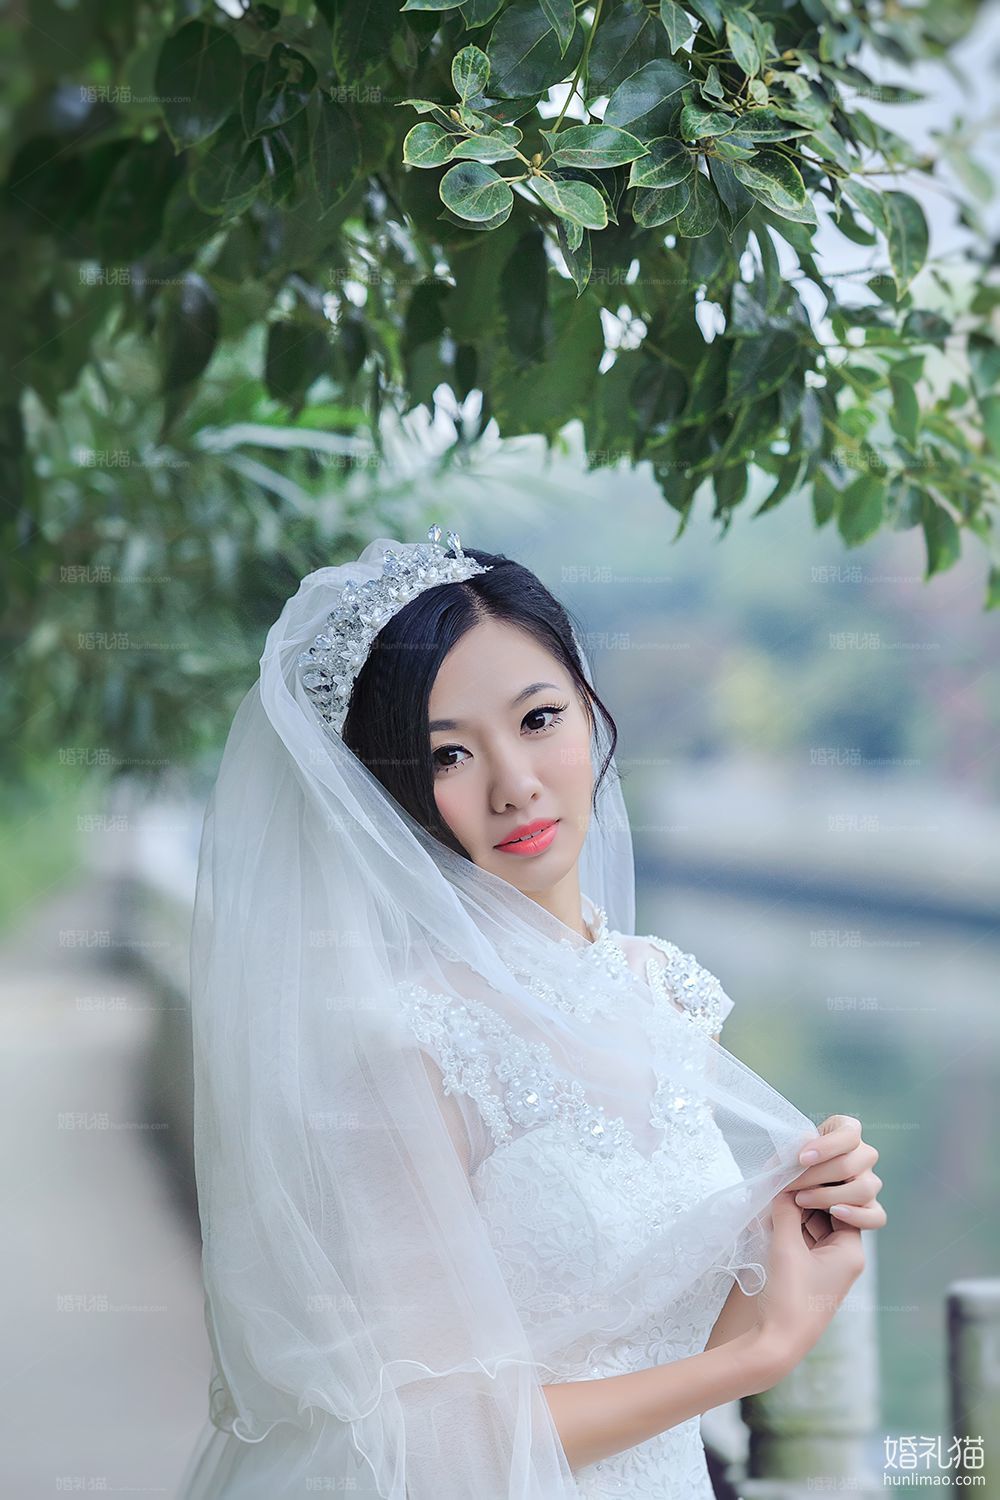 2017年8月广州结婚照,,佛山婚纱照,婚纱照图片